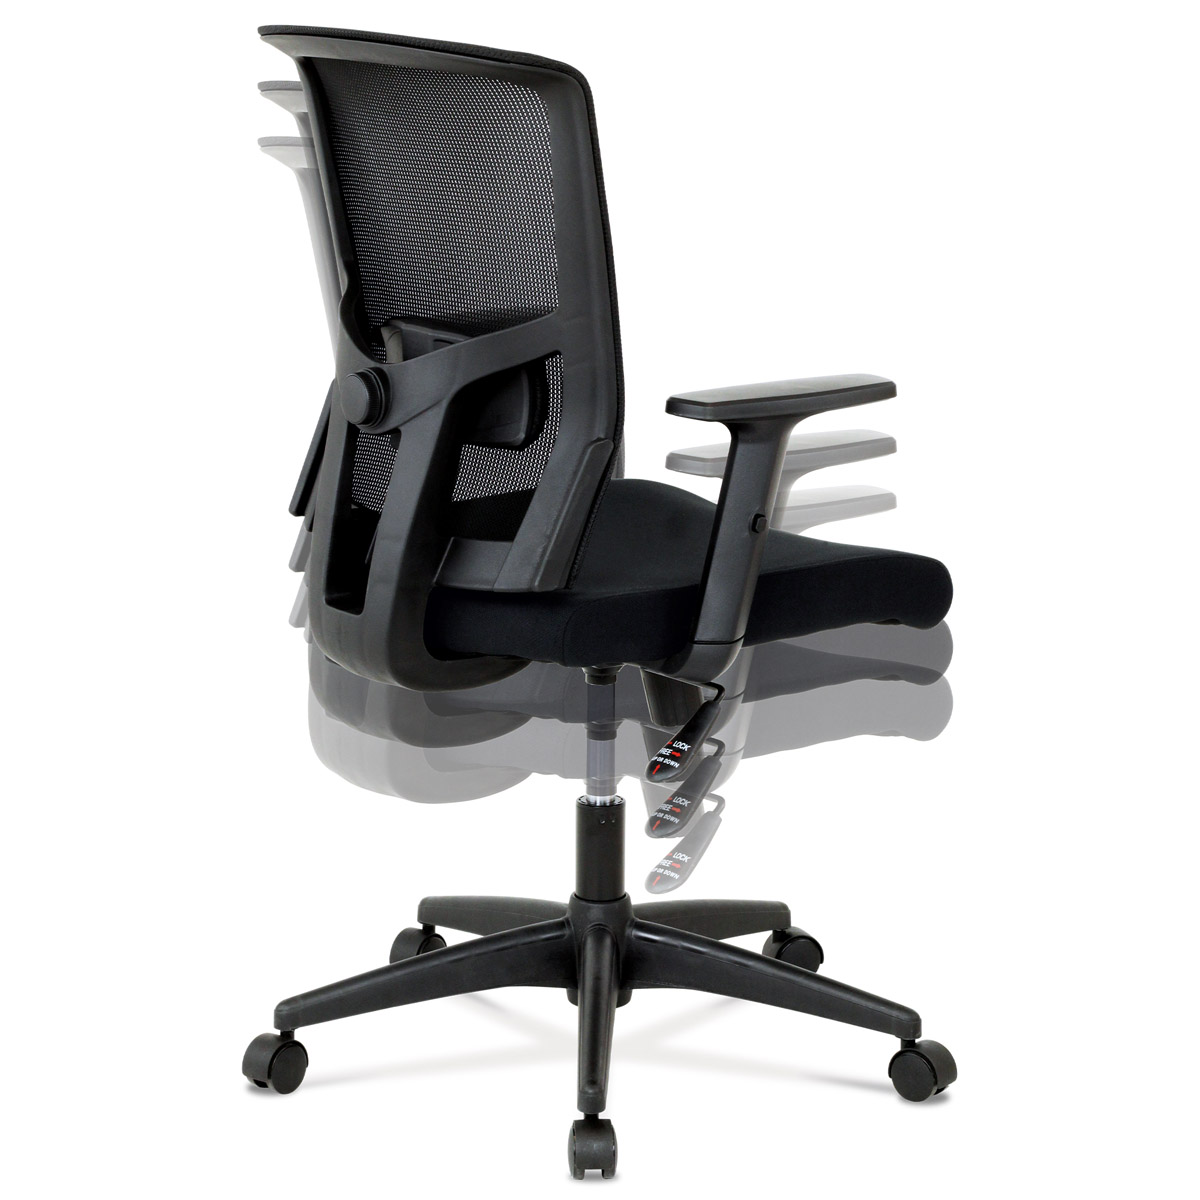 Kancelářská židle, látka černá, houpací mechanismus